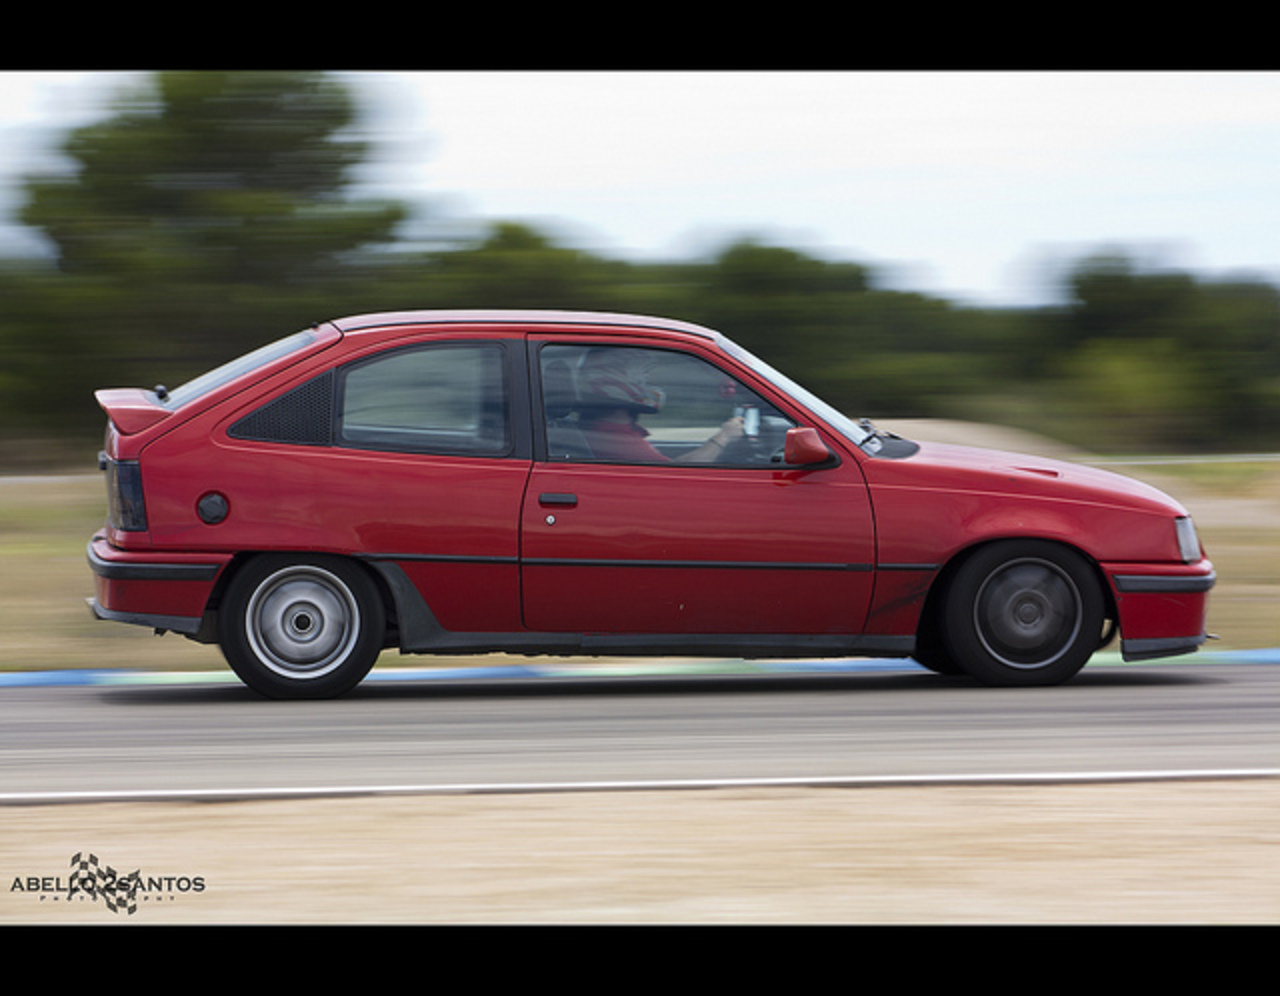 Time Attack Calafat 2011 - Opel Kadett GSI | Flickr - Photo Sharing!